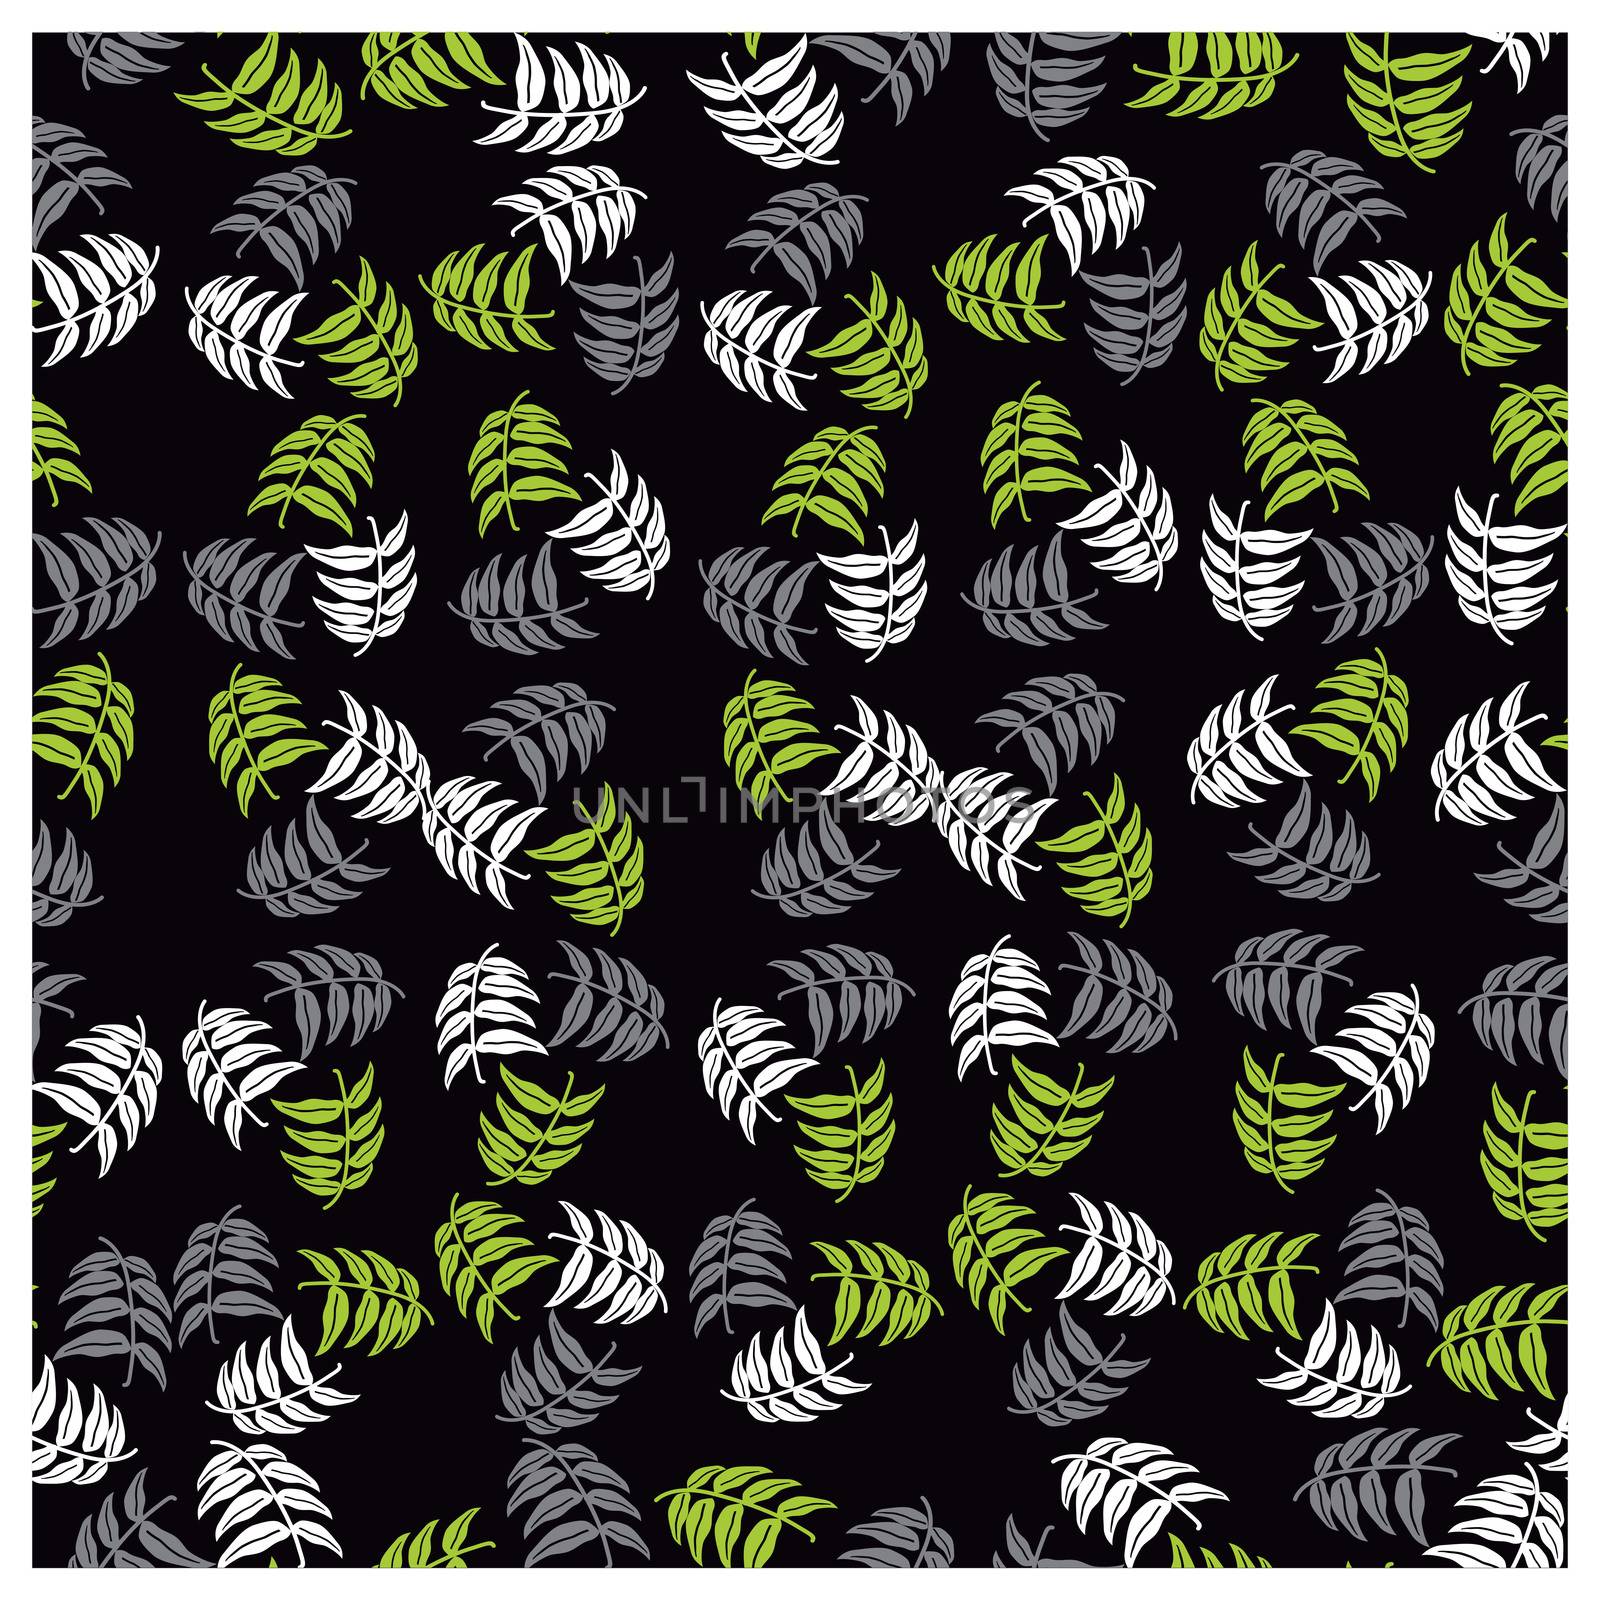 Seamless pattern by Crownaart